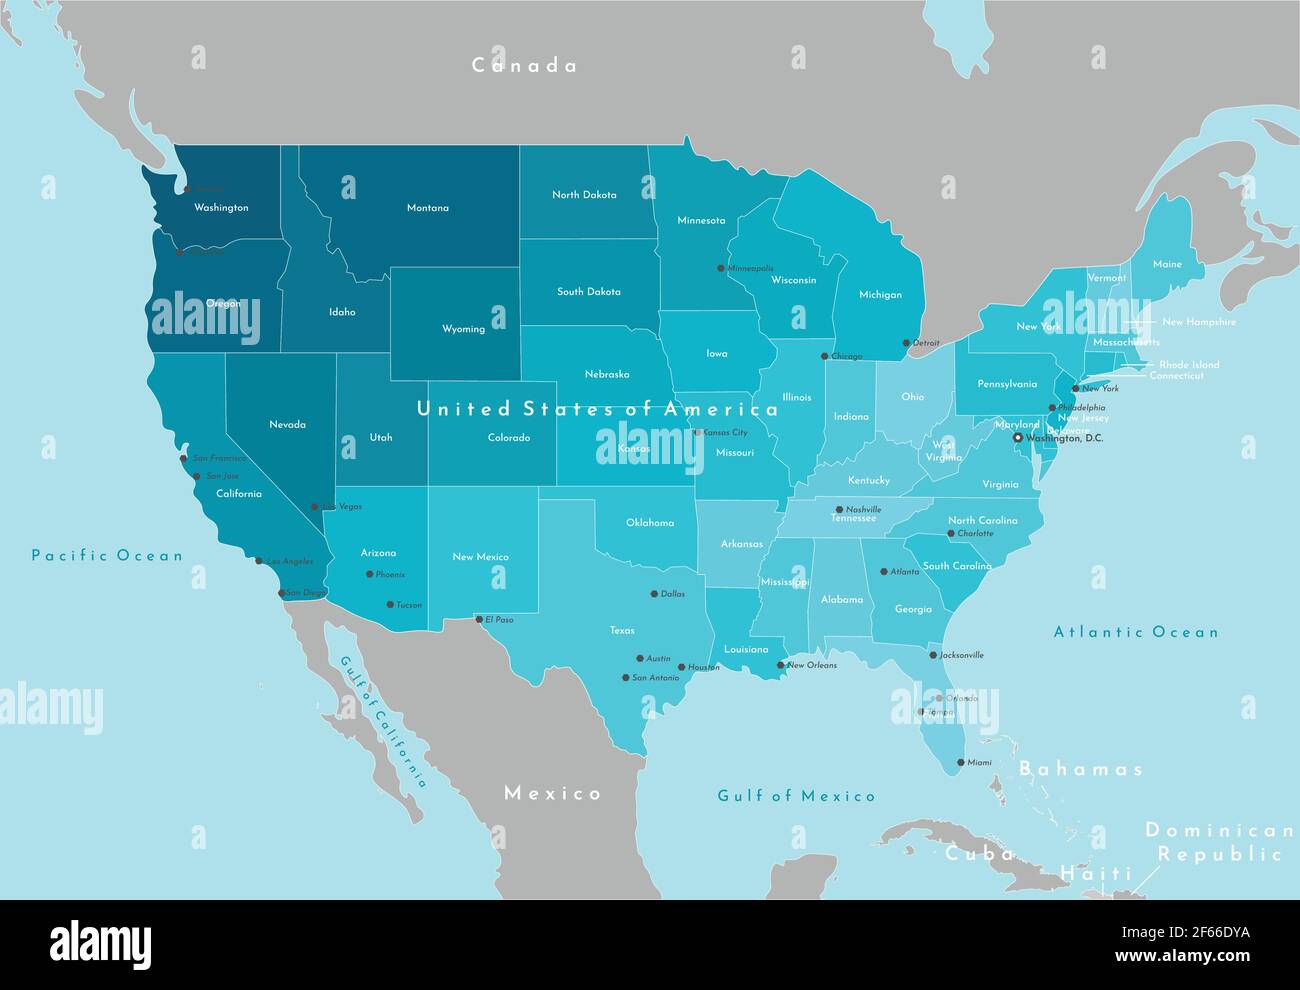 Illustrazione moderna vettoriale. Mappa geografica semplificata degli Stati Uniti d'America (USA) e dei paesi vicini. Sfondo blu degli oceani. Nomi Illustrazione Vettoriale